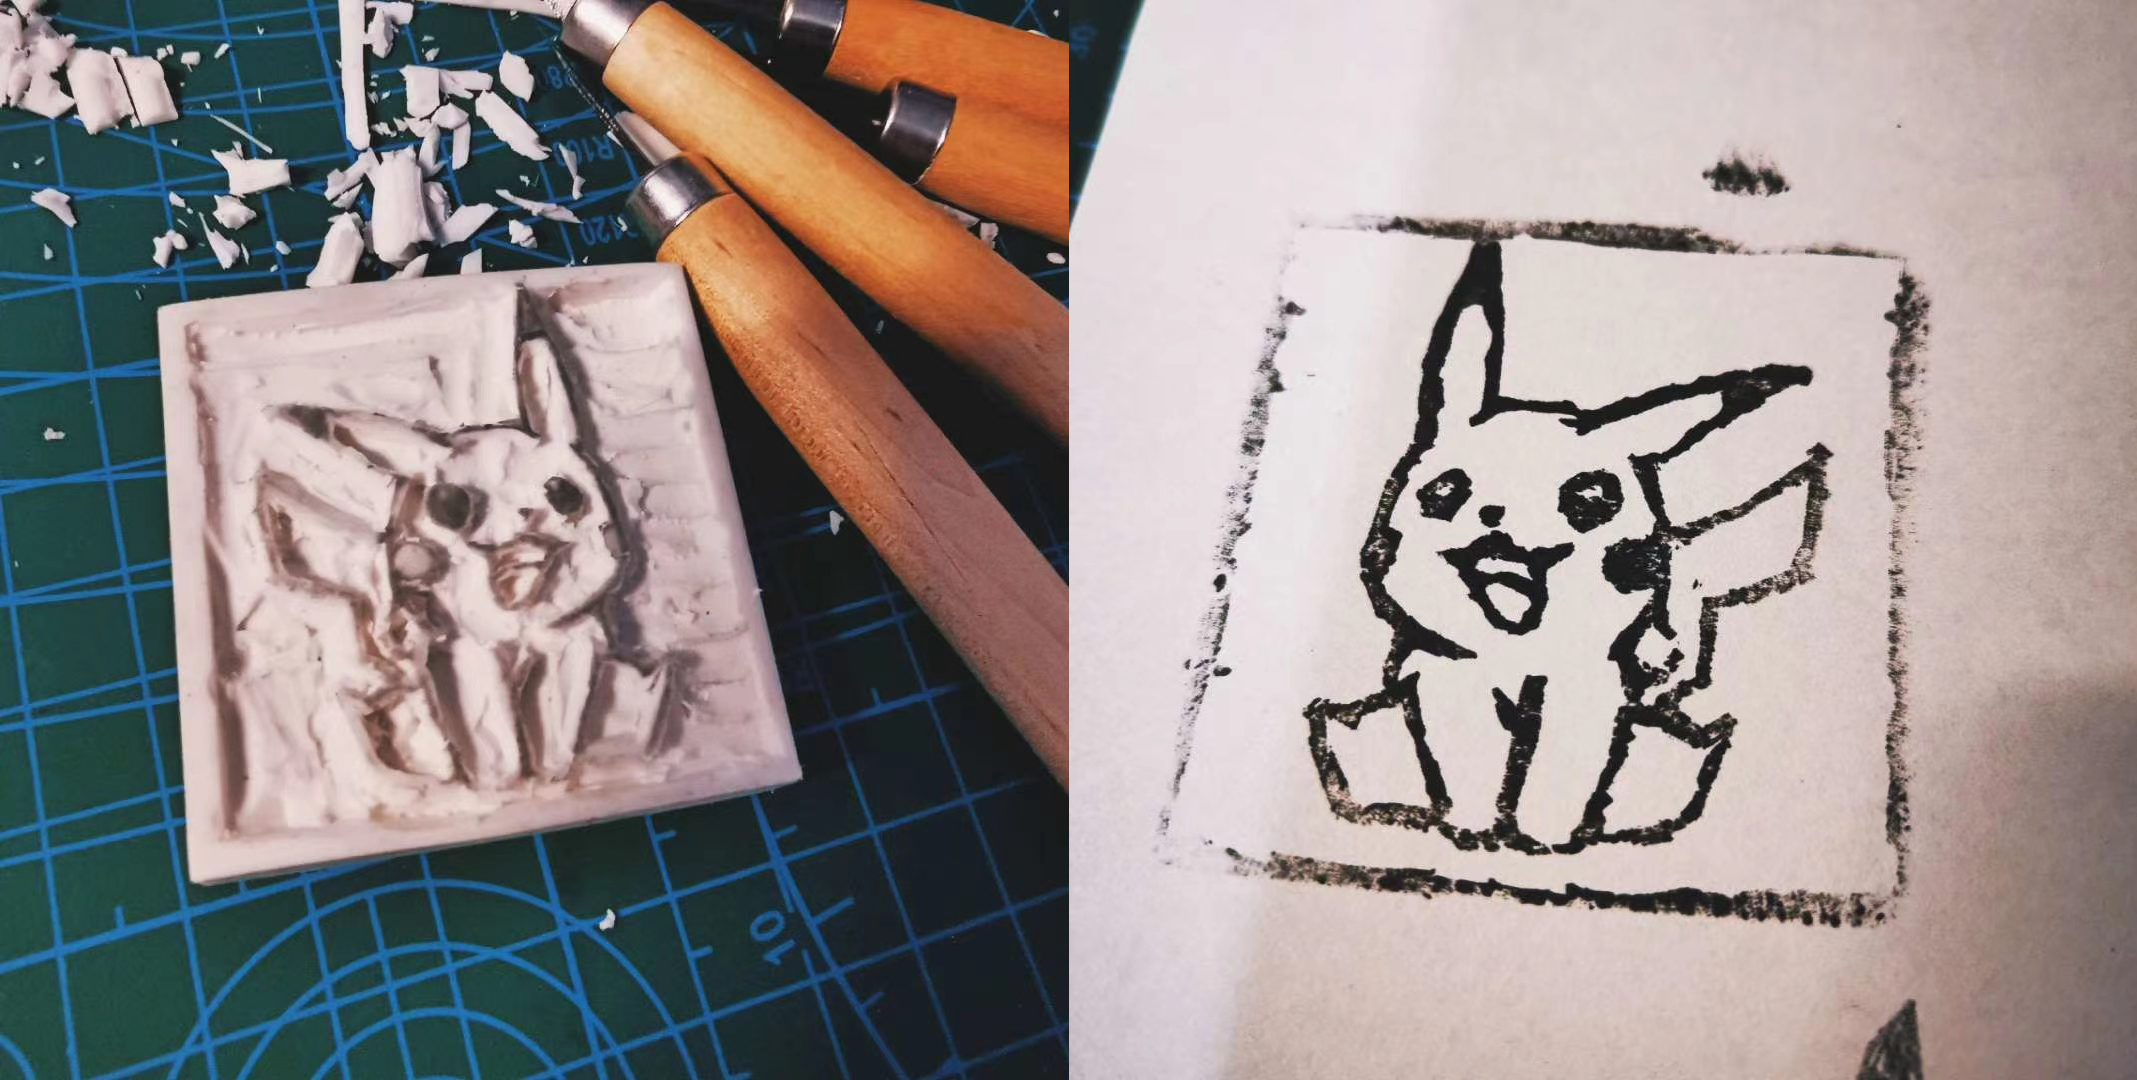 最后给大家展示下我精雕细琢的橡皮章作品《狗啃的皮卡丘》!